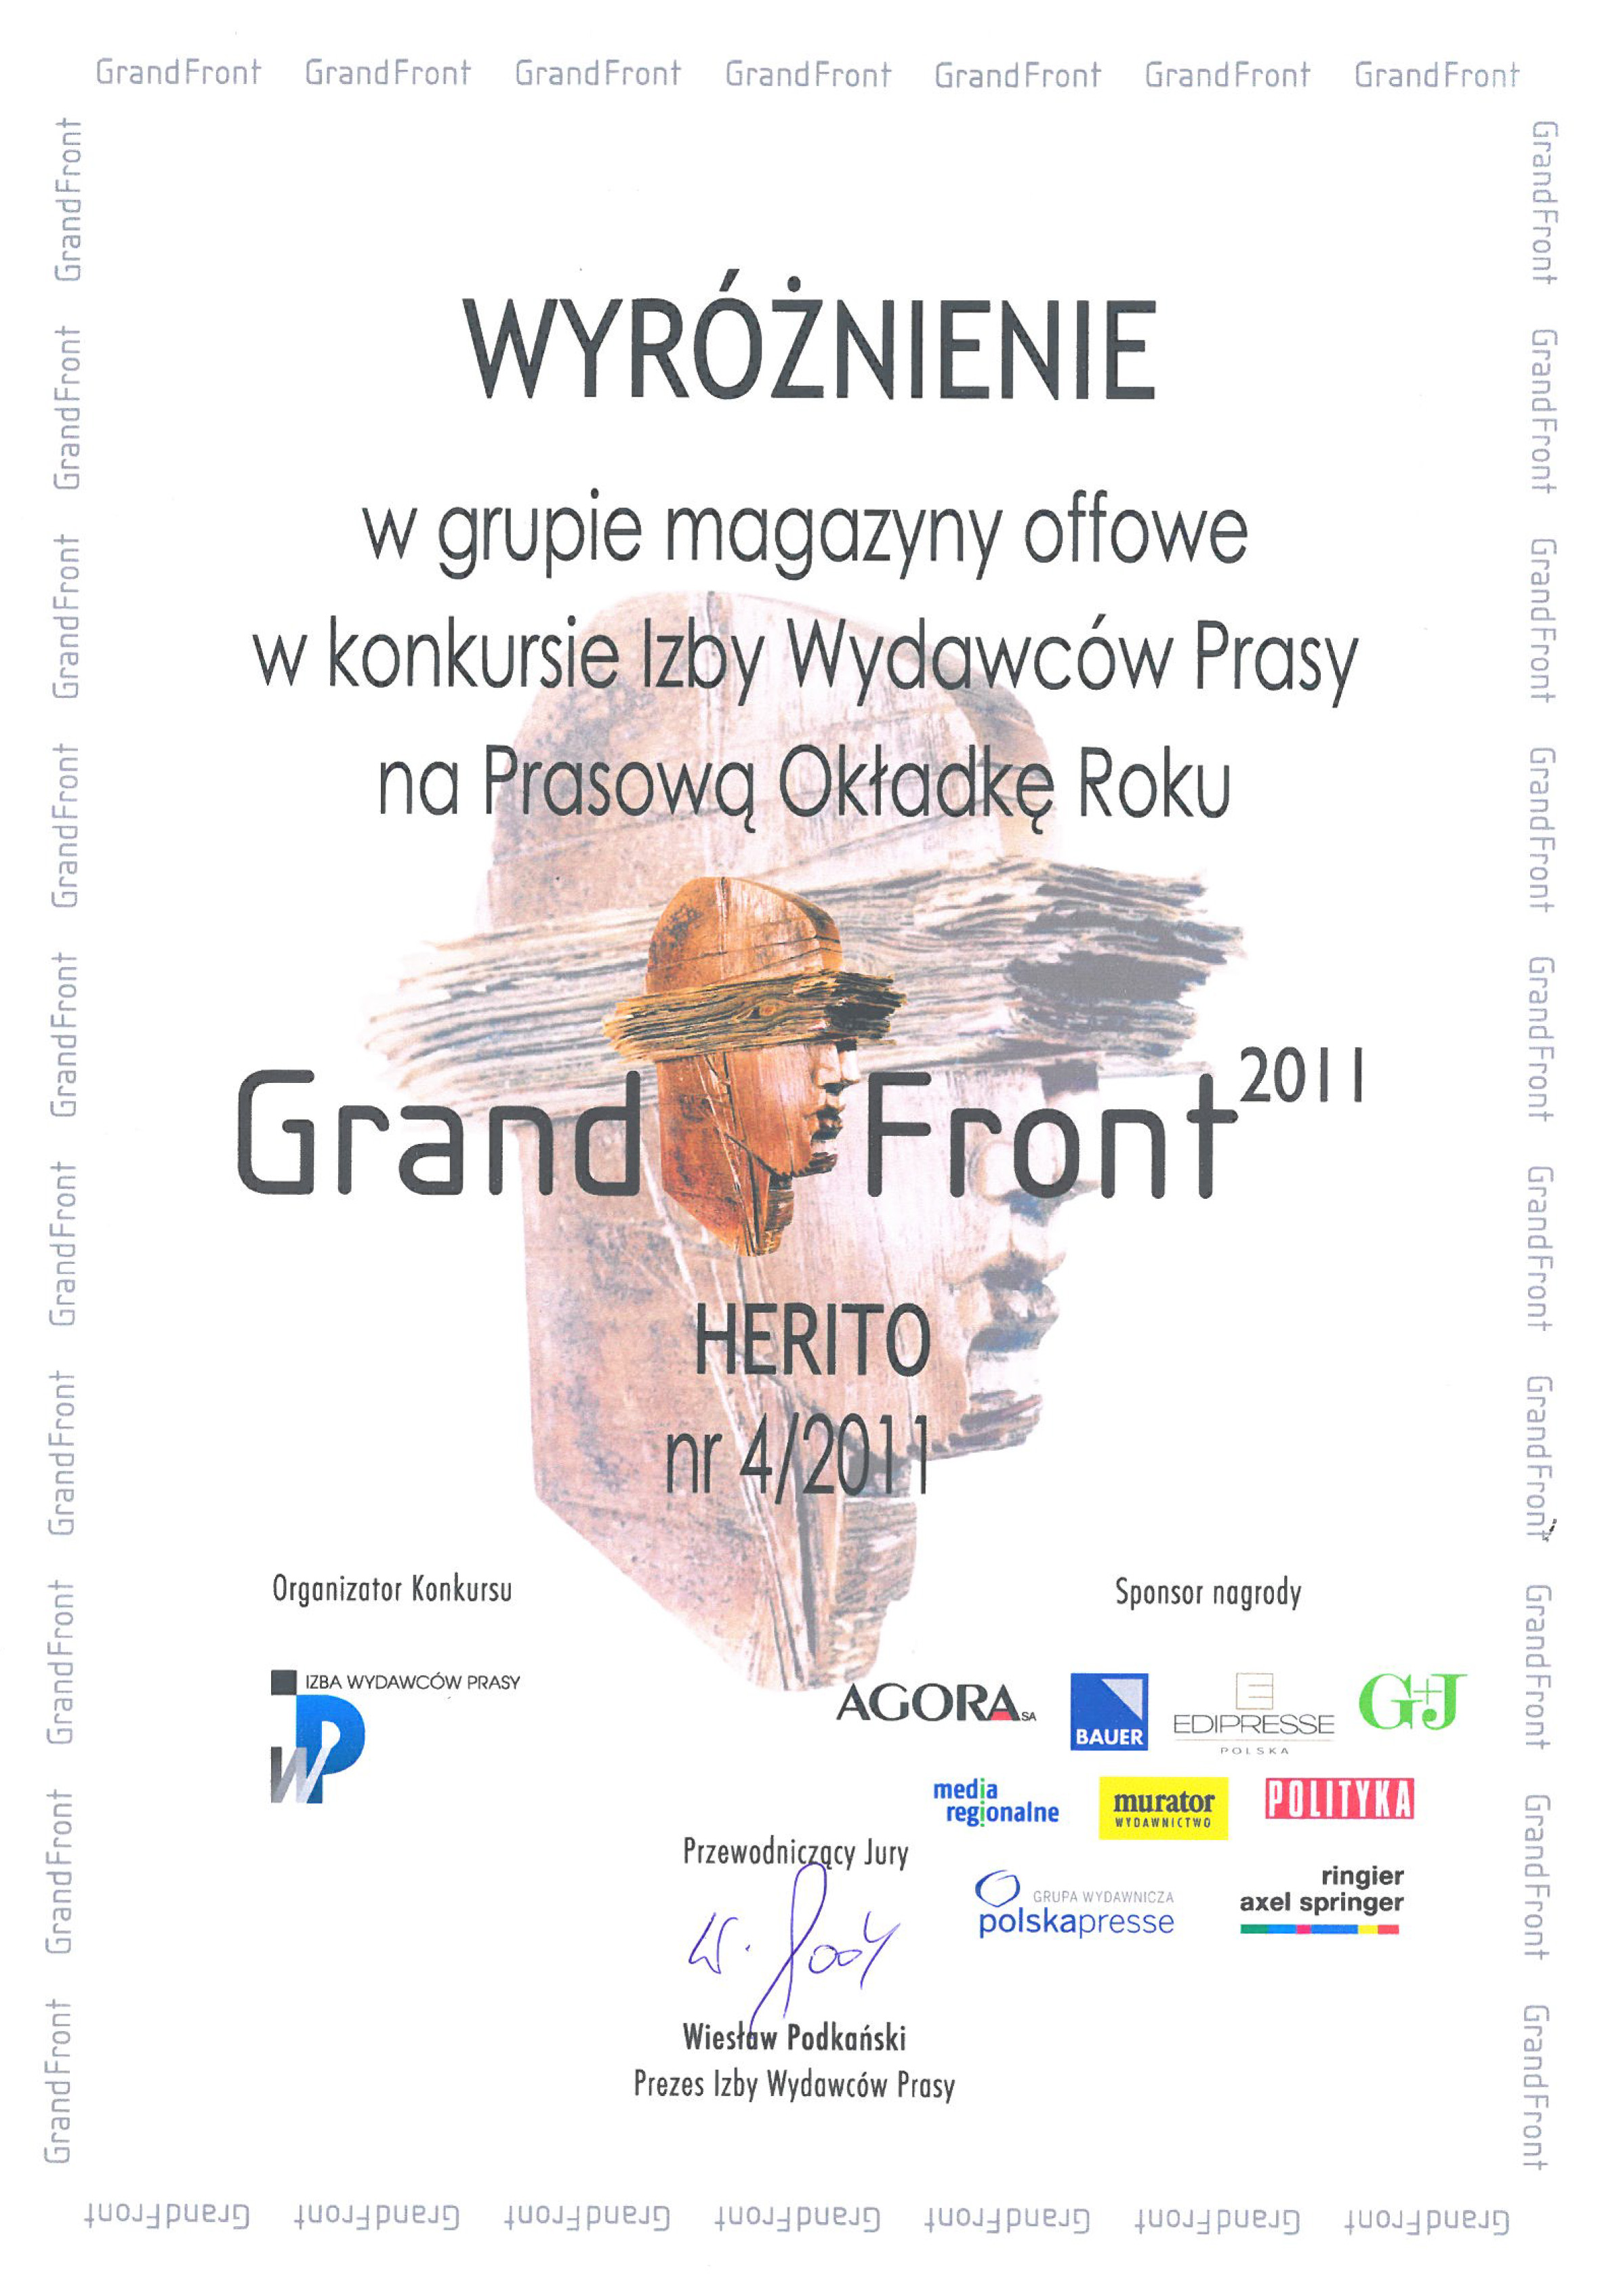 Nagroda Grand Front (źródło: materiały prasowe)